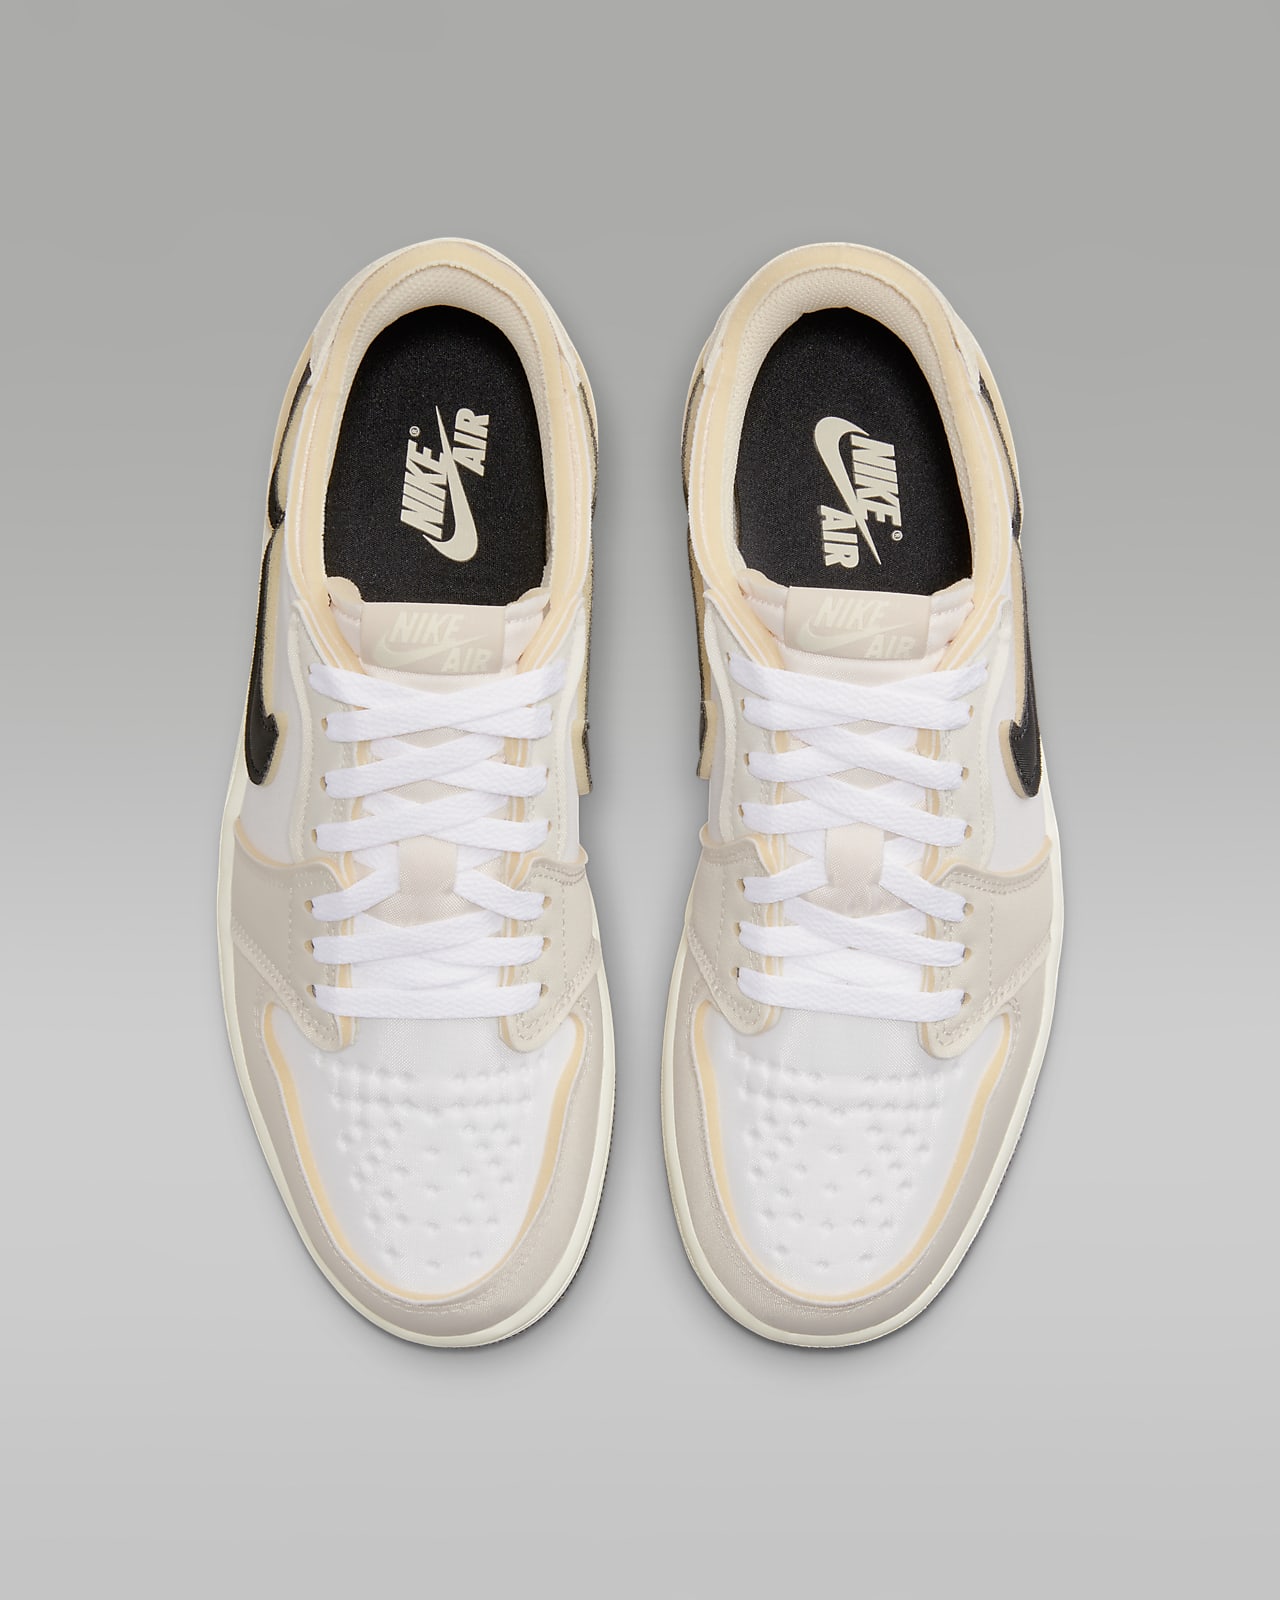 Nike Air Jordan 1 Low OG